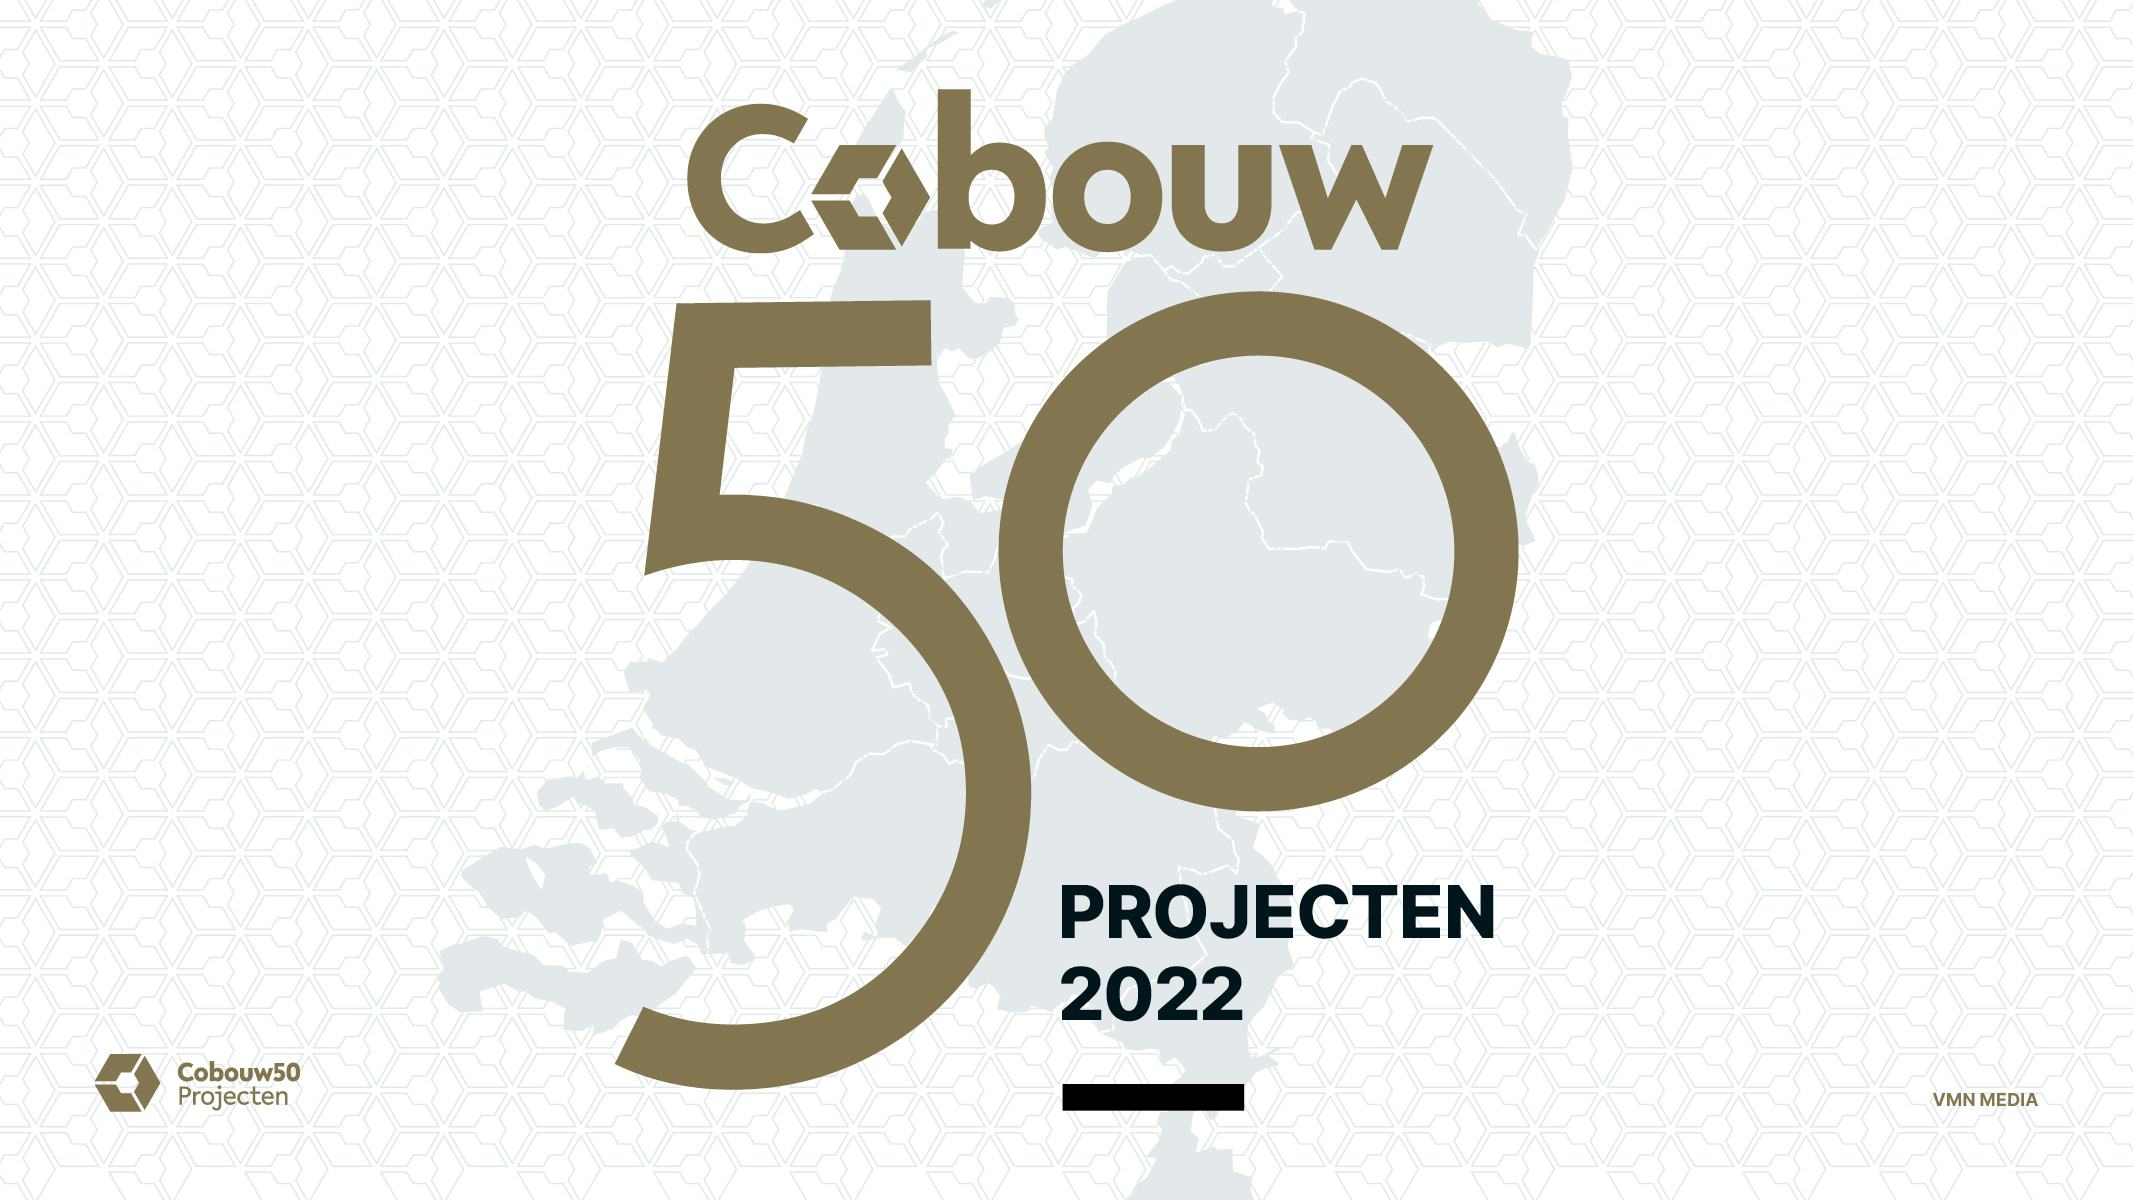 Dit zijn de 50 grootste bouwprojecten van Nederland